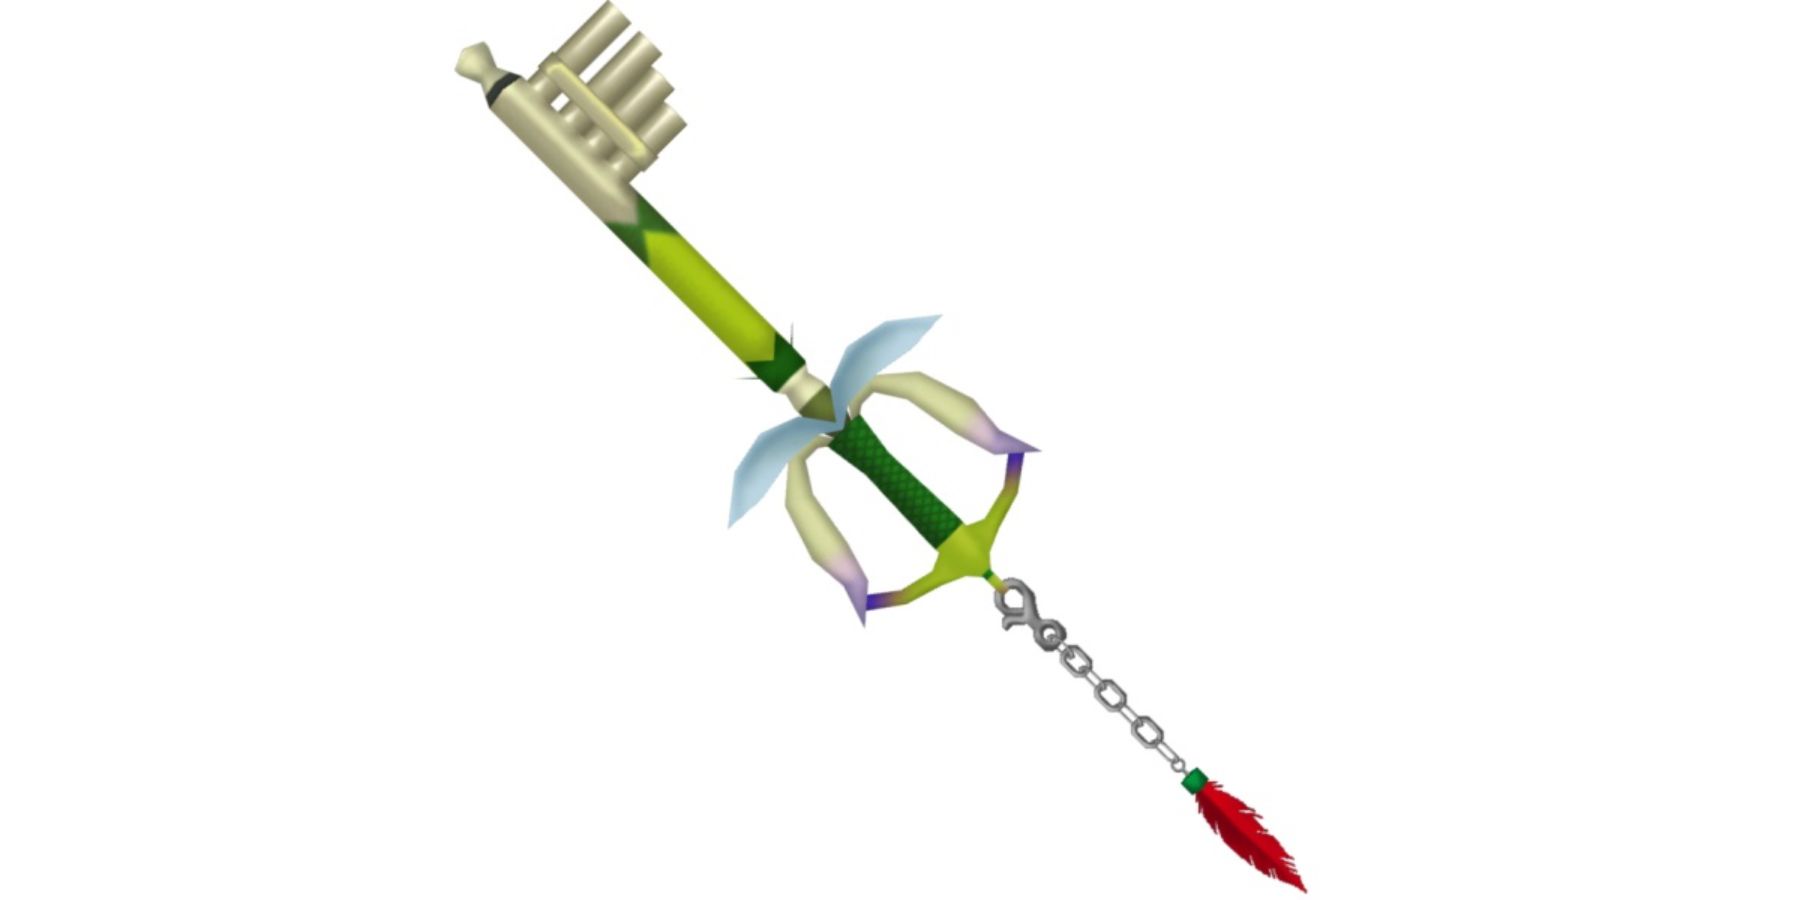 The Fairy Harp Keyblade in Kingdom Hearts